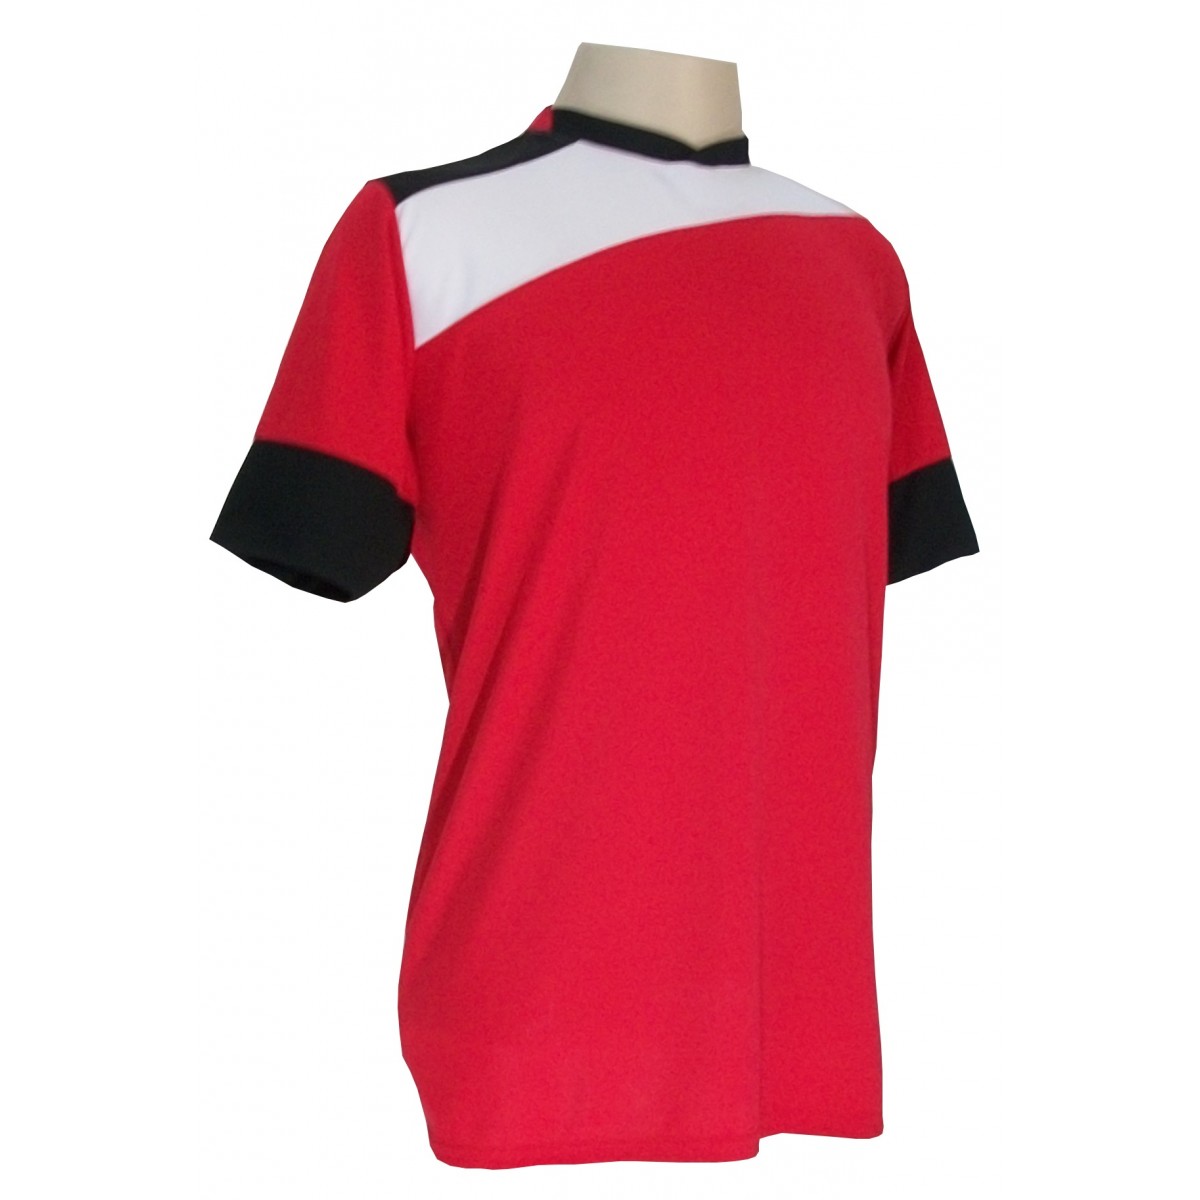 Uniforme Esportivo Completo modelo Sporting 14+1 (14 camisas Vermelho/Branco/Preto + 14 calções Madrid Preto + 14 pares de meiões Brancos + 1 conjunto de goleiro) + Brindes